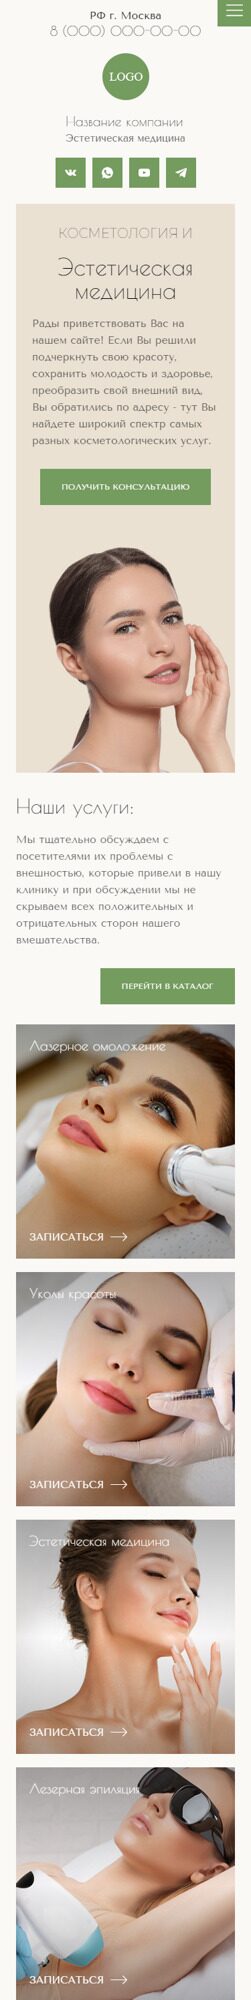 Готовый Сайт-Бизнес № 4755049 - Эстетическая медицина, косметология (Мобильная версия)